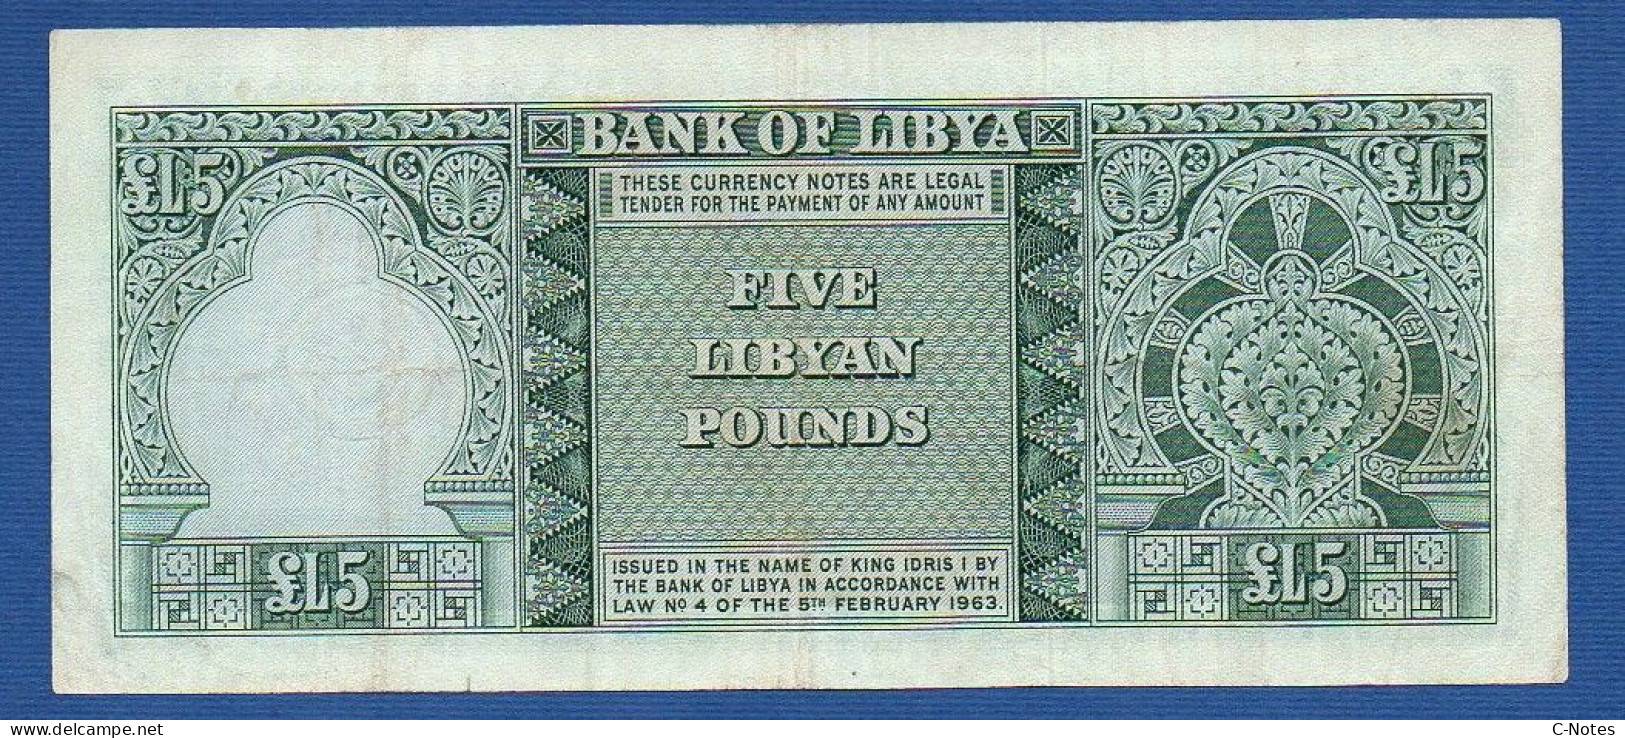 LIBYA - P.31 – 5 Pounds 1963 VF, Serie 5 B/15 571650 - Libyen